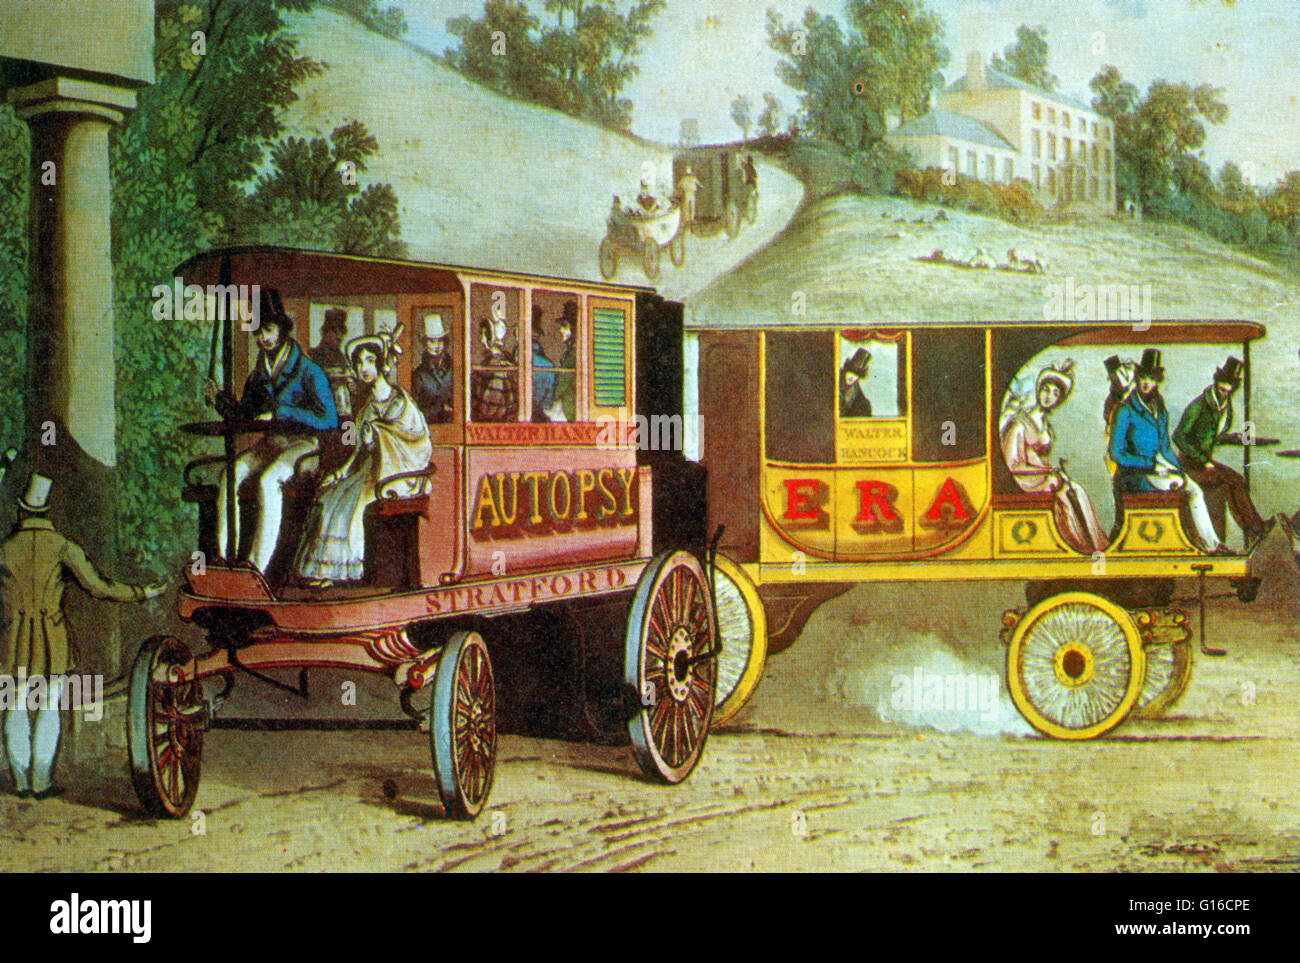 Walter Hancock (Juin 16, 1799 - Mai 14, 1852) était un inventeur anglais de la période victorienne, connu pour ses véhicules routiers à vapeur Hancock a été l'un des pionniers qui ont conduit l'entraîneur à la vapeur à un haut niveau de développement. Il a construit plusieurs des Banque D'Images